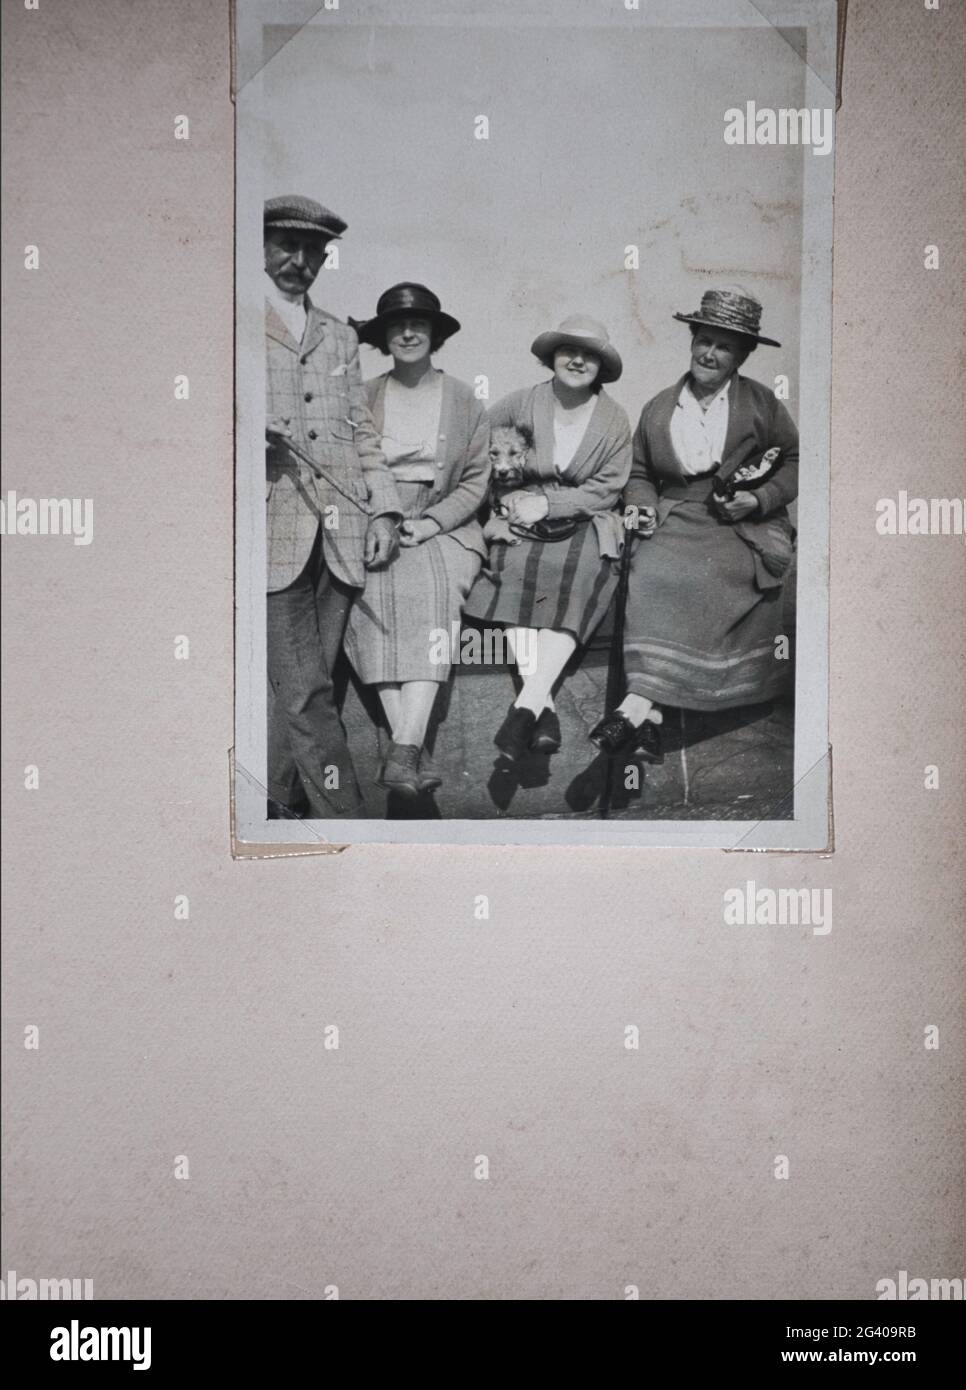 Authentisches Vintage-Foto aus den 1920er Jahren von älteren Männern und Frauen und zwei jungen Frauen, die alle Hüte tragen. Konzept von Nostalgie, Vintage, Stockfoto